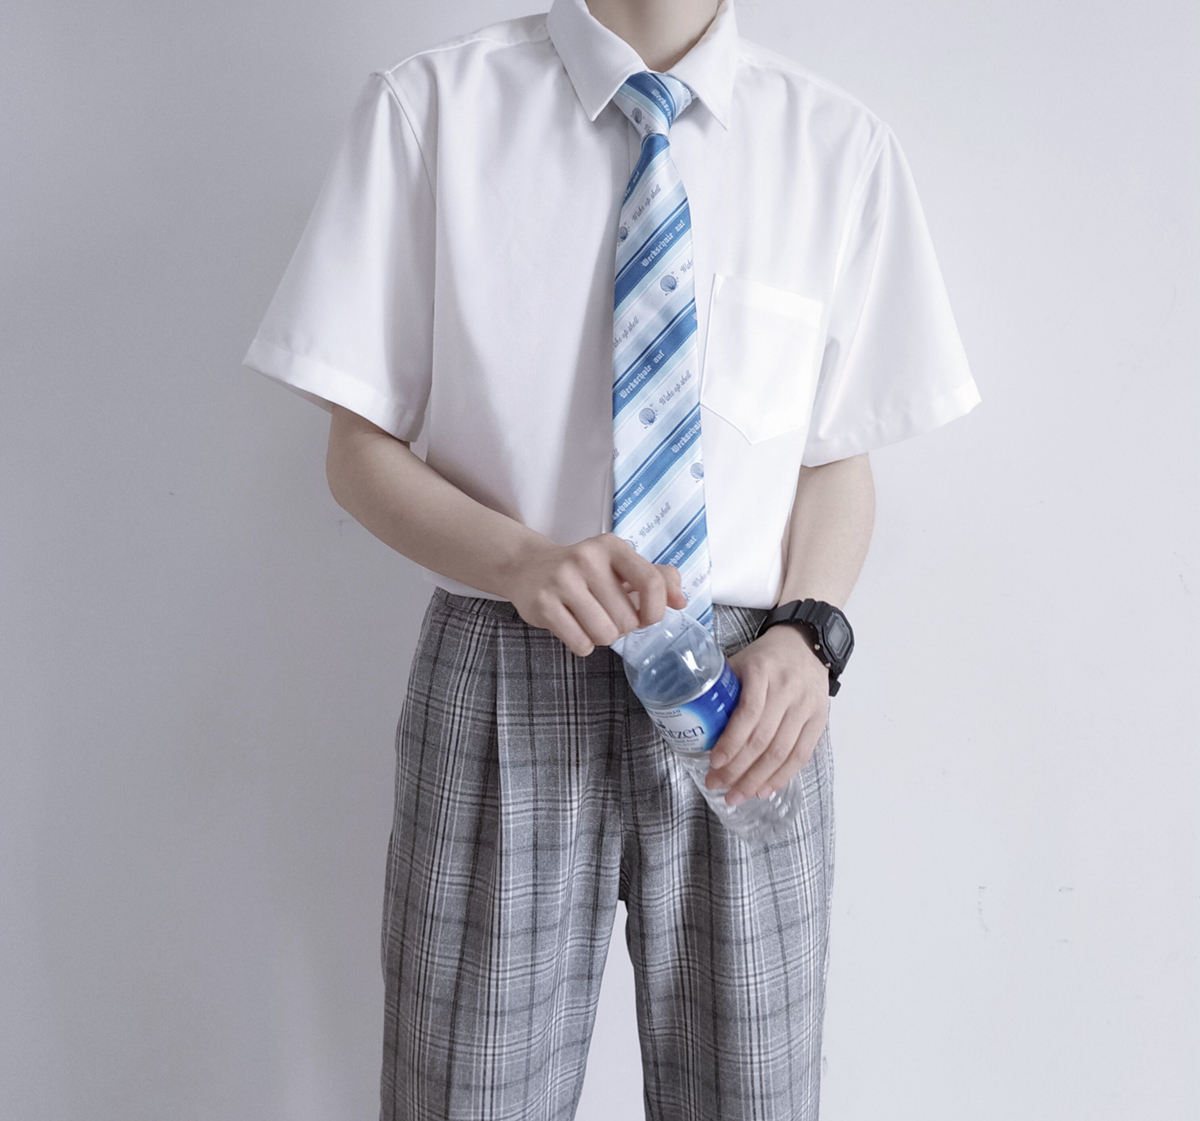 【刺篇】原创DK制服正统纯色基础款黑白色男生学院风短袖衬衫夏季